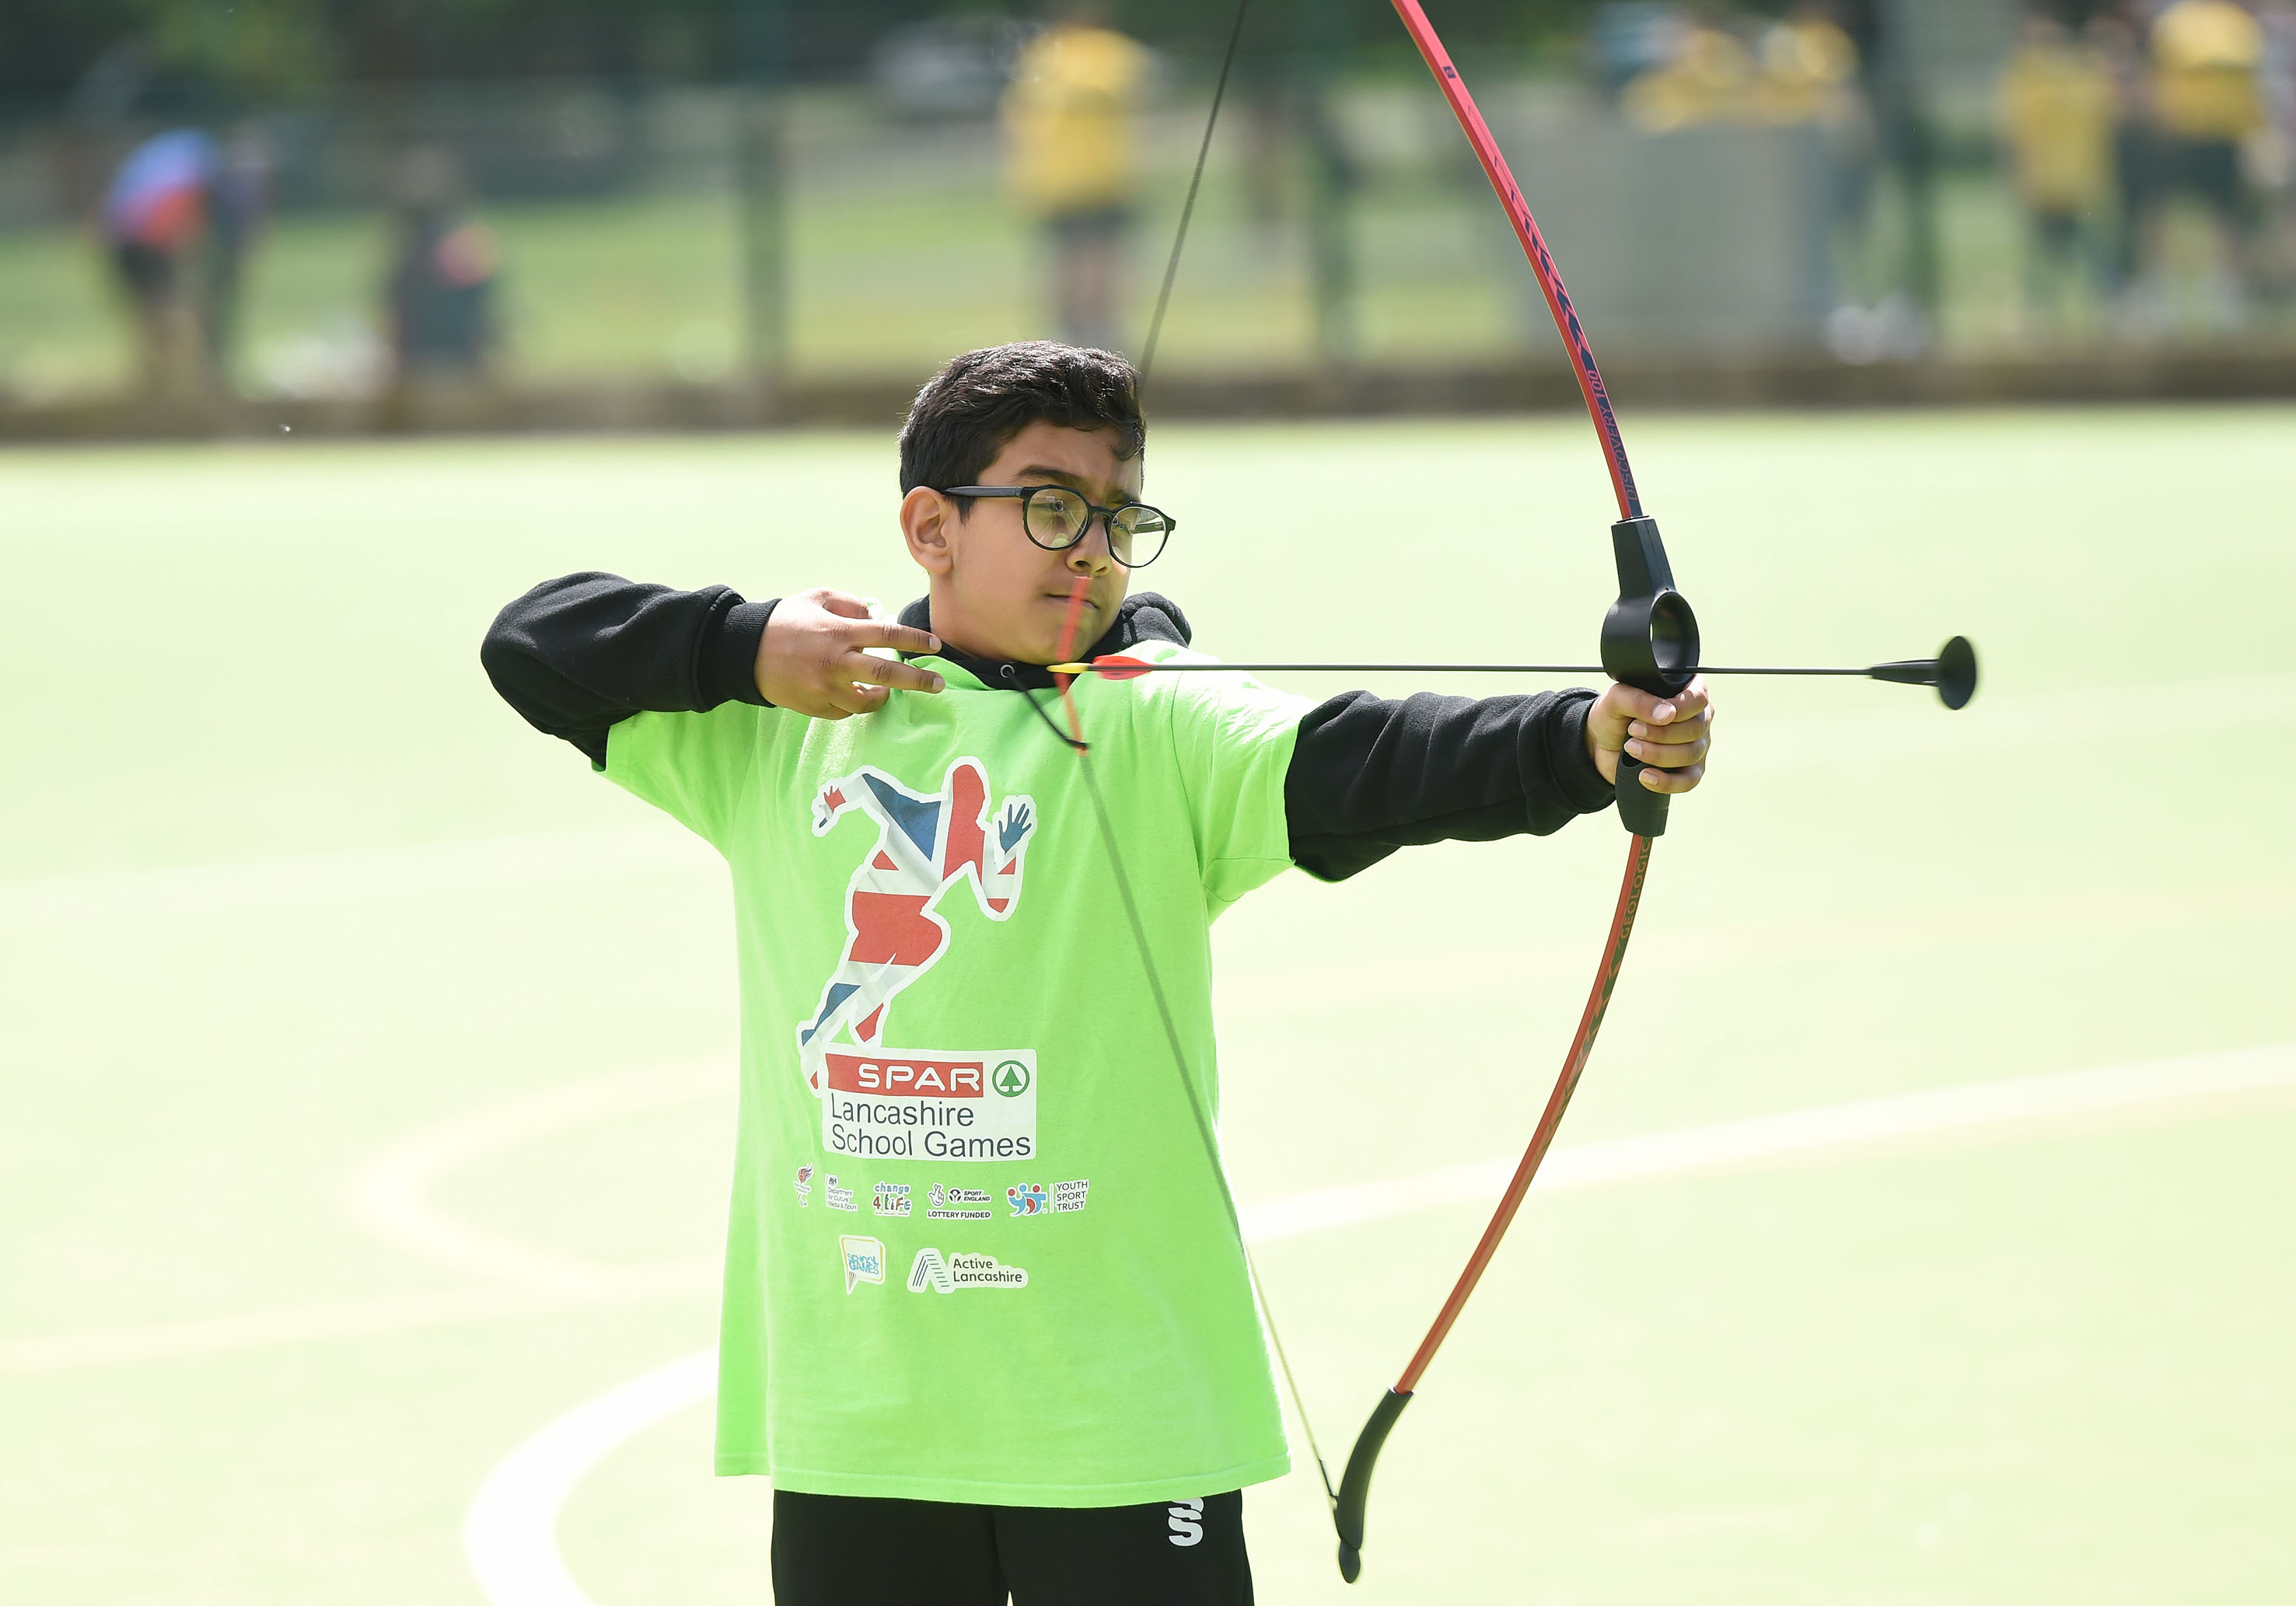 Lancashire School Games - Hyndburn, Archery